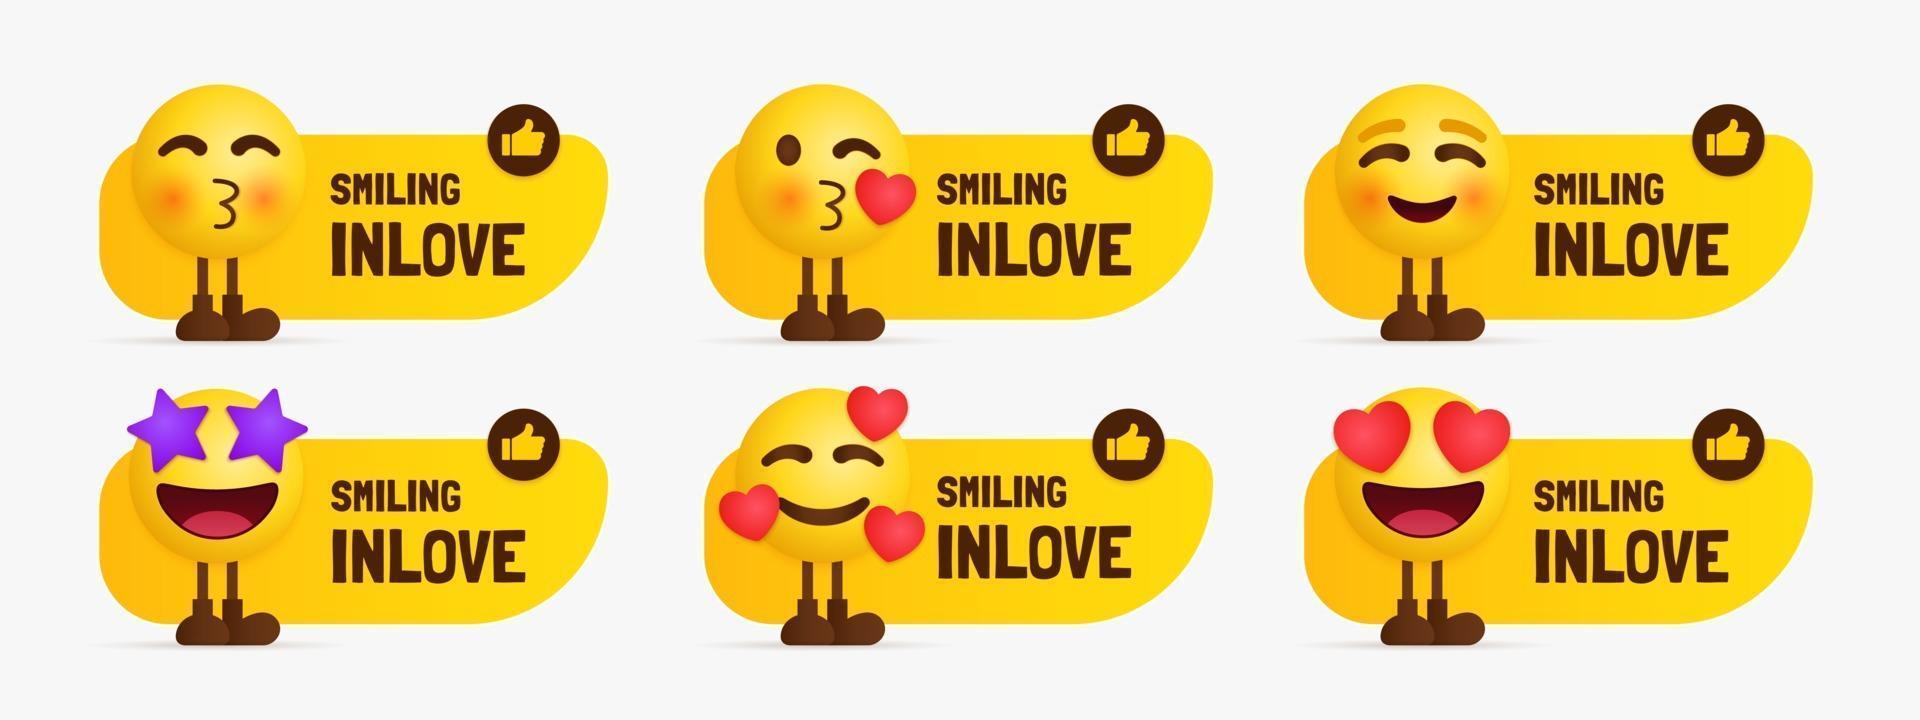 ensemble de caractères emoji inlove debout avec étiquette de texte vecteur